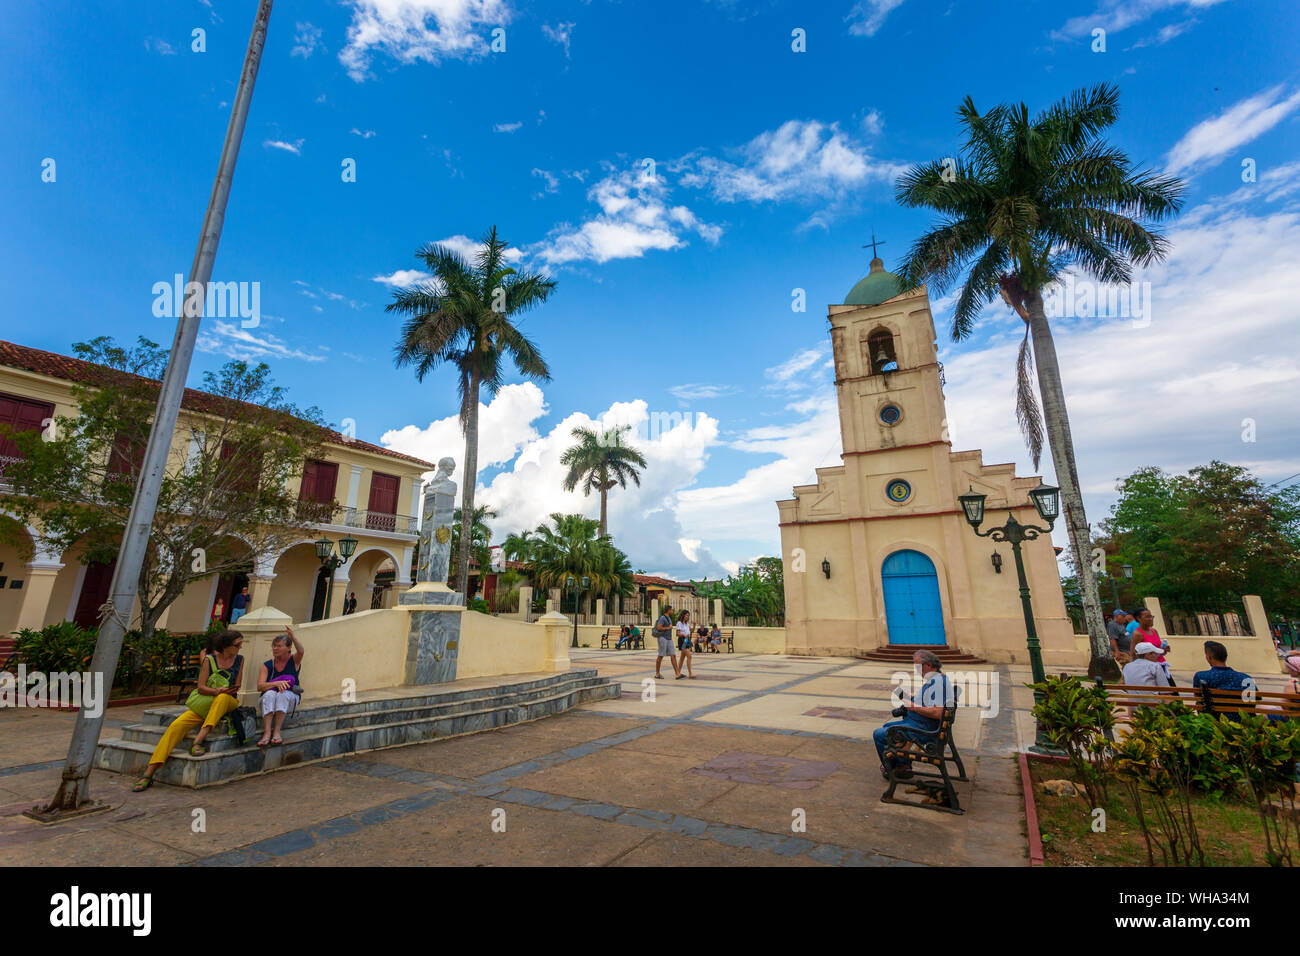 Iglesia de Viñales, sitio del Patrimonio Mundial de la UNESCO, de Viñales, provincia de Pinar del Río, Cuba, Las Antillas, el Caribe, América Central Foto de stock